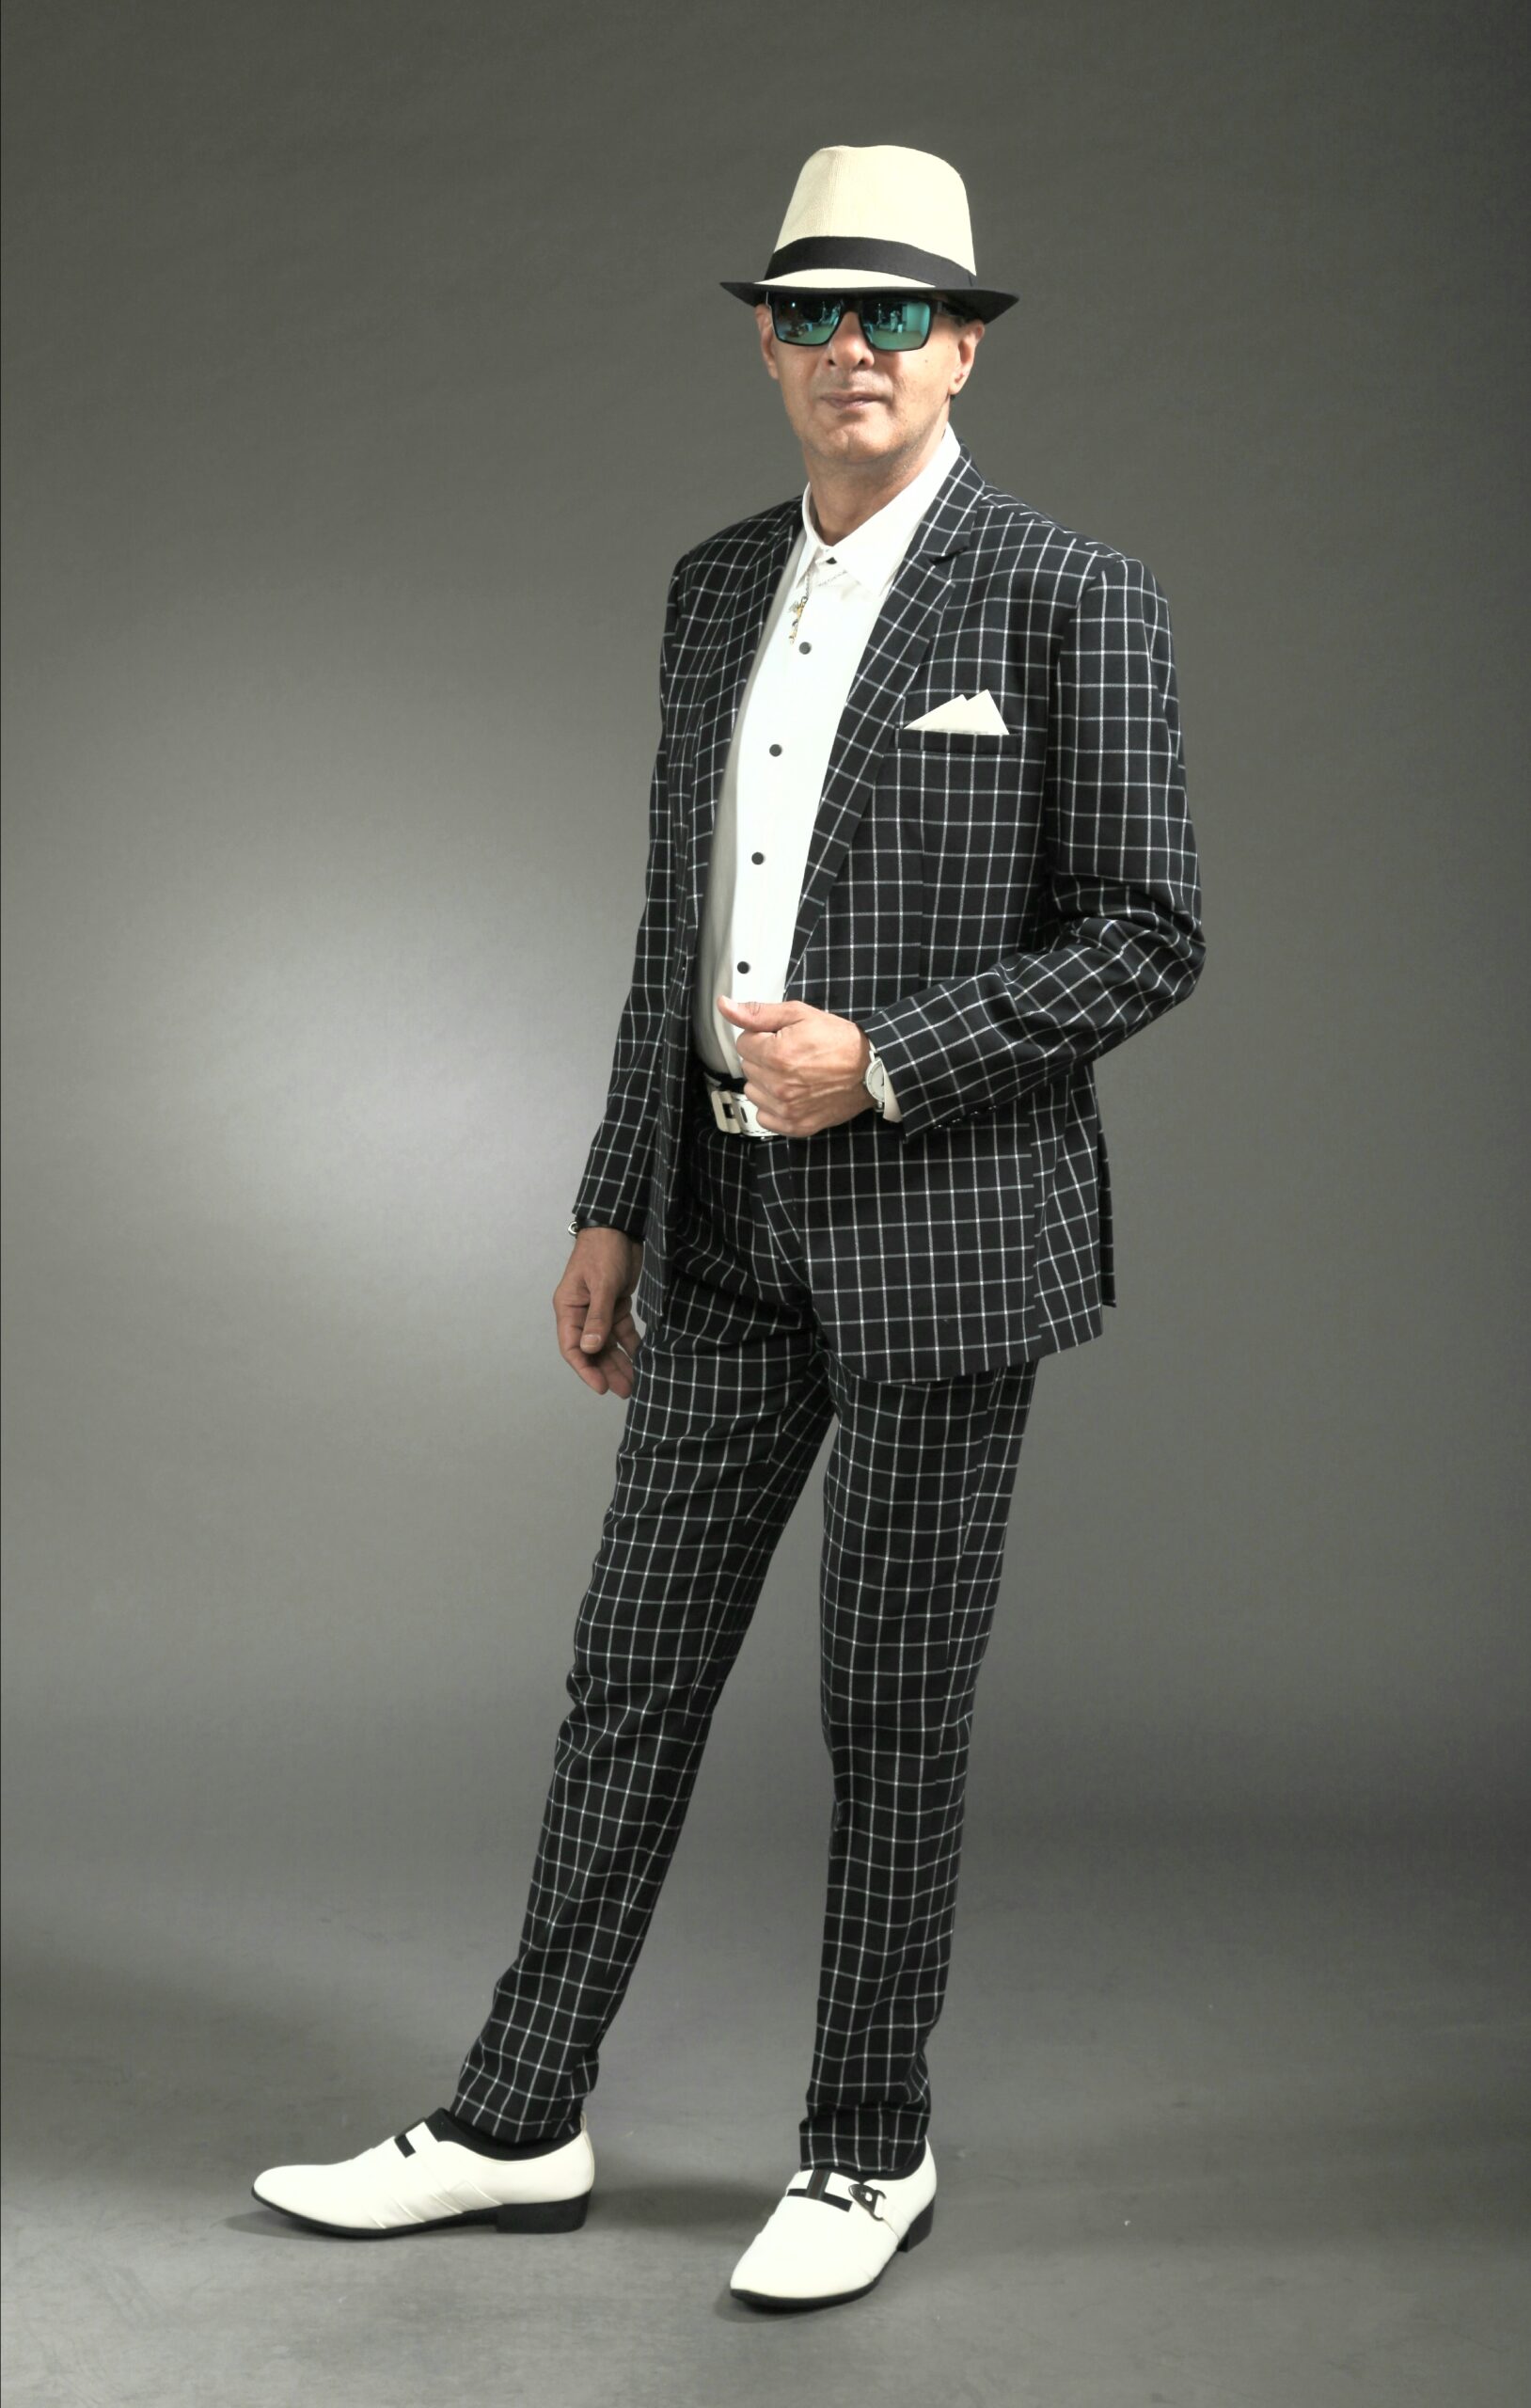 MST-5008-03-rent_rental_hire_tuxedo_suit_black_tie_suit_designer_suits_shop_tailor_tailors_singapore_wedding